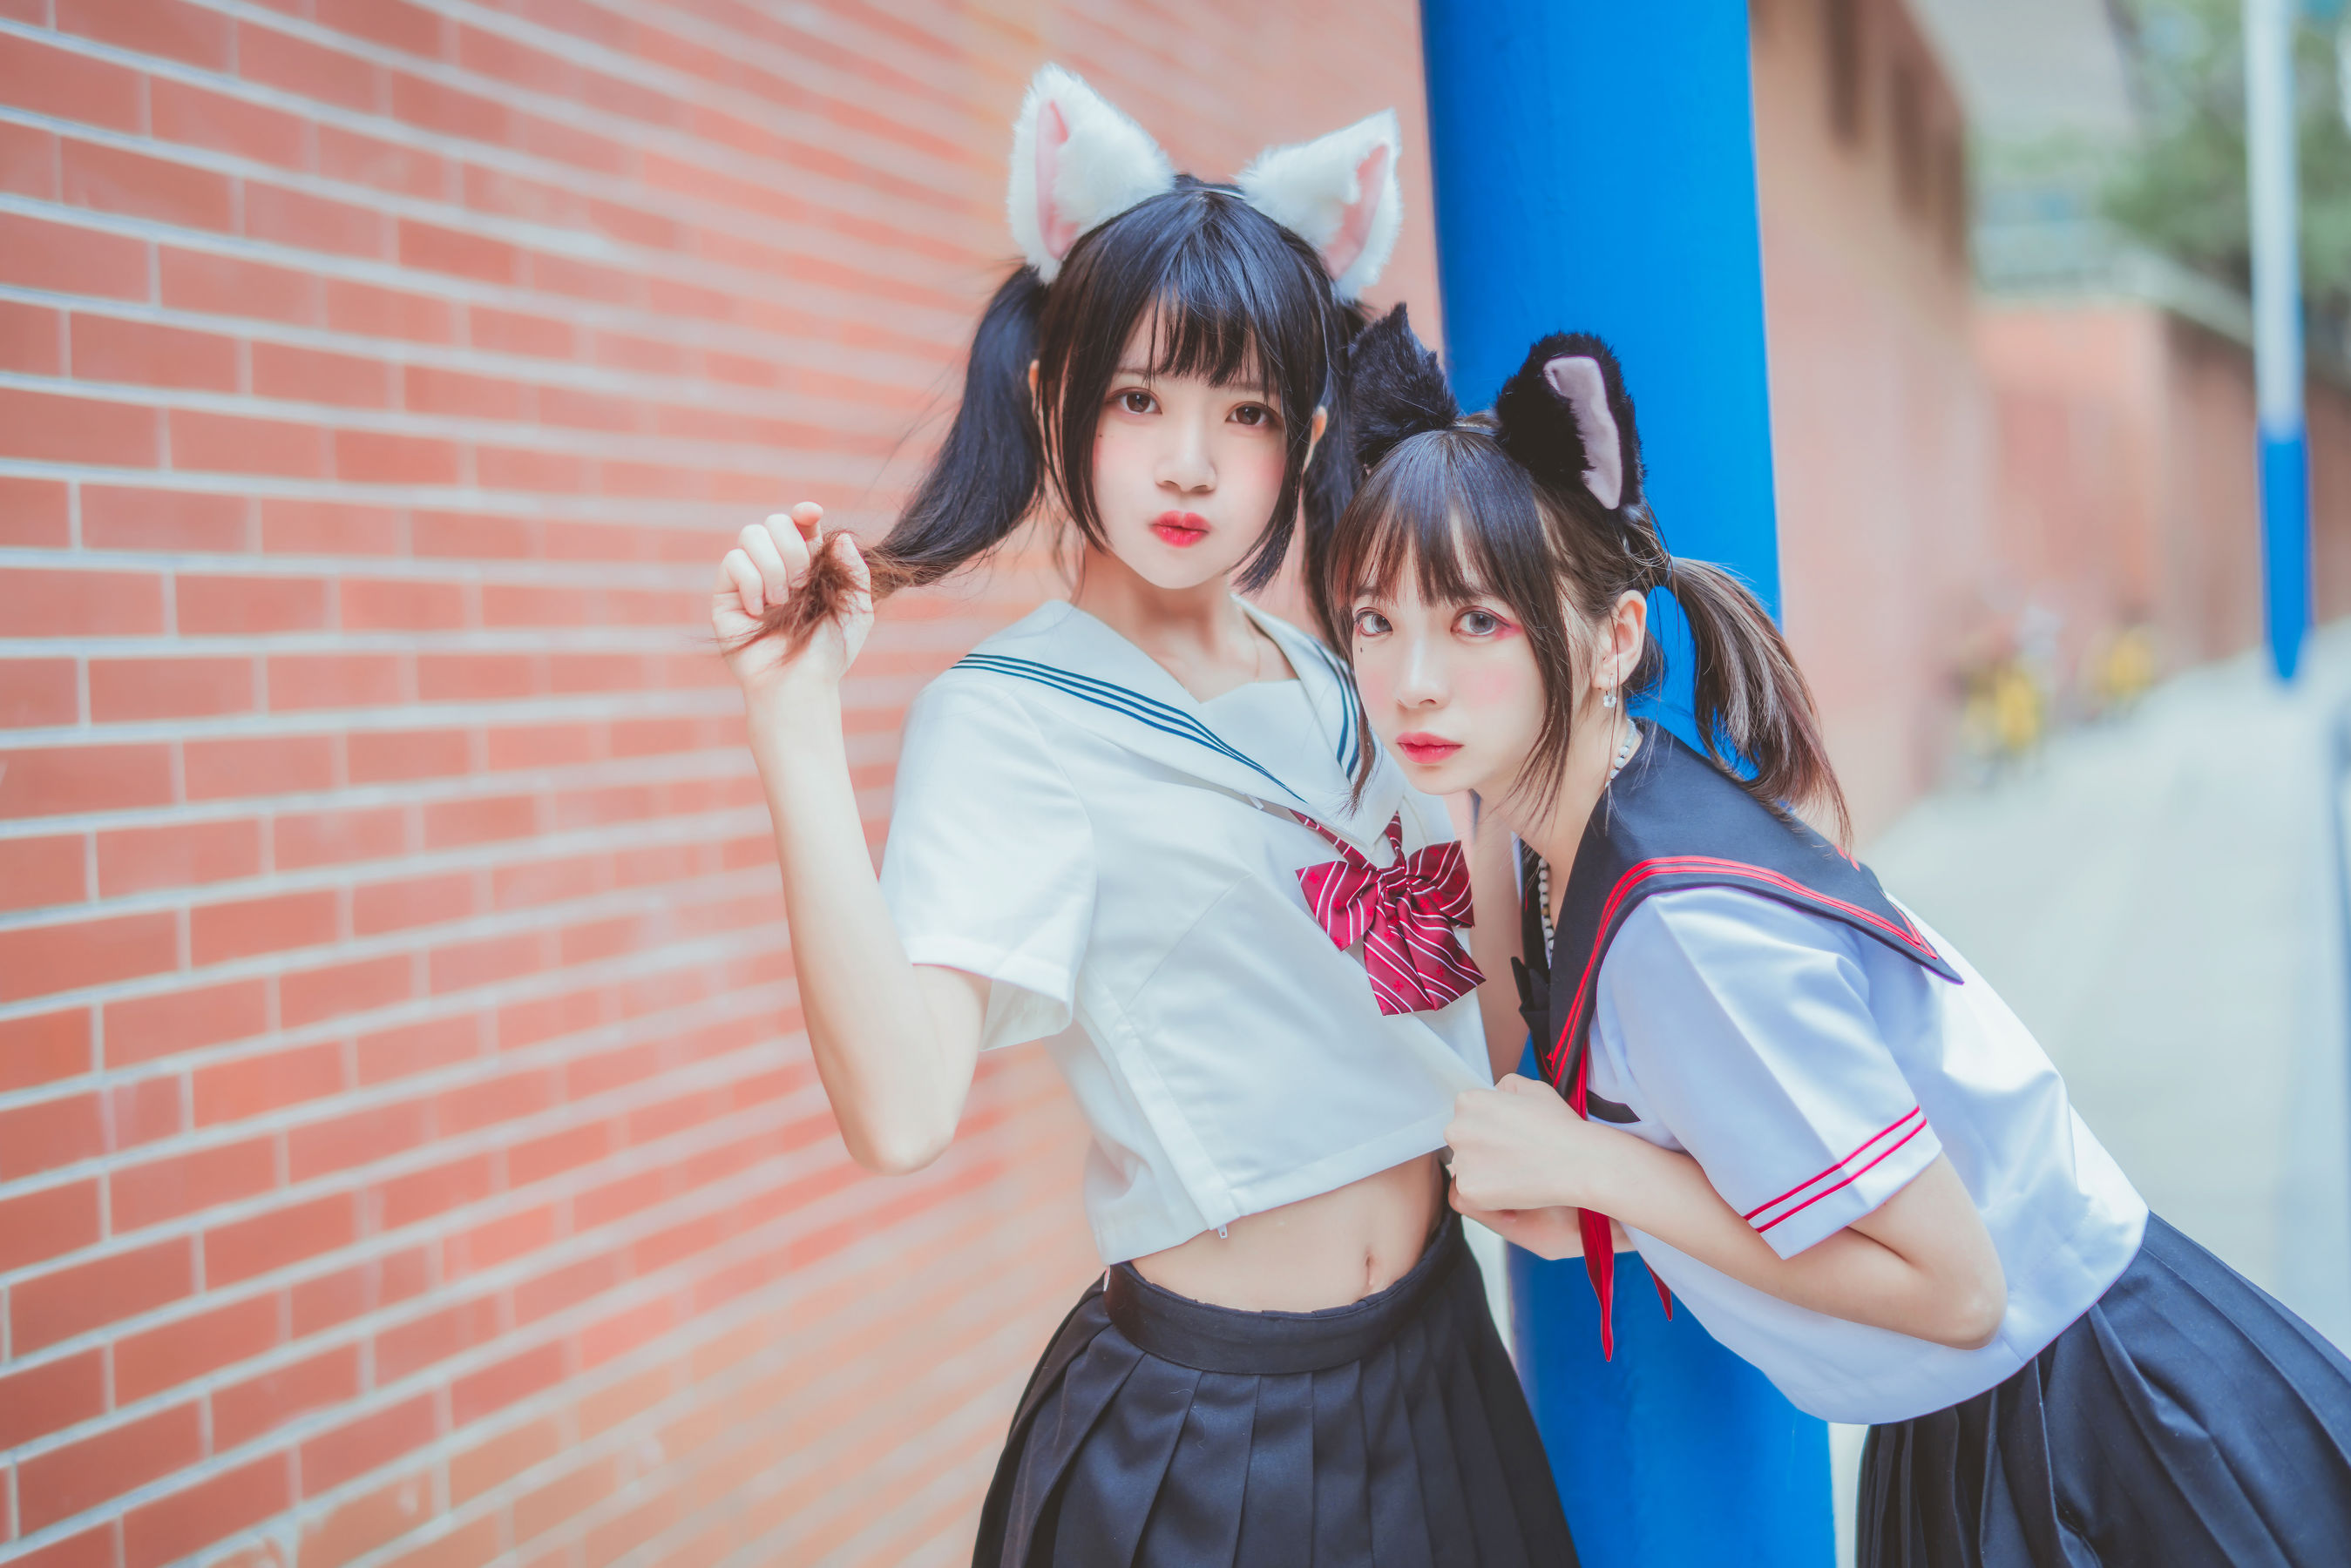 People 2698x1800 CherryNeko women model women outdoors Asian two women cat ears school uniform urban twintails Feng Mao